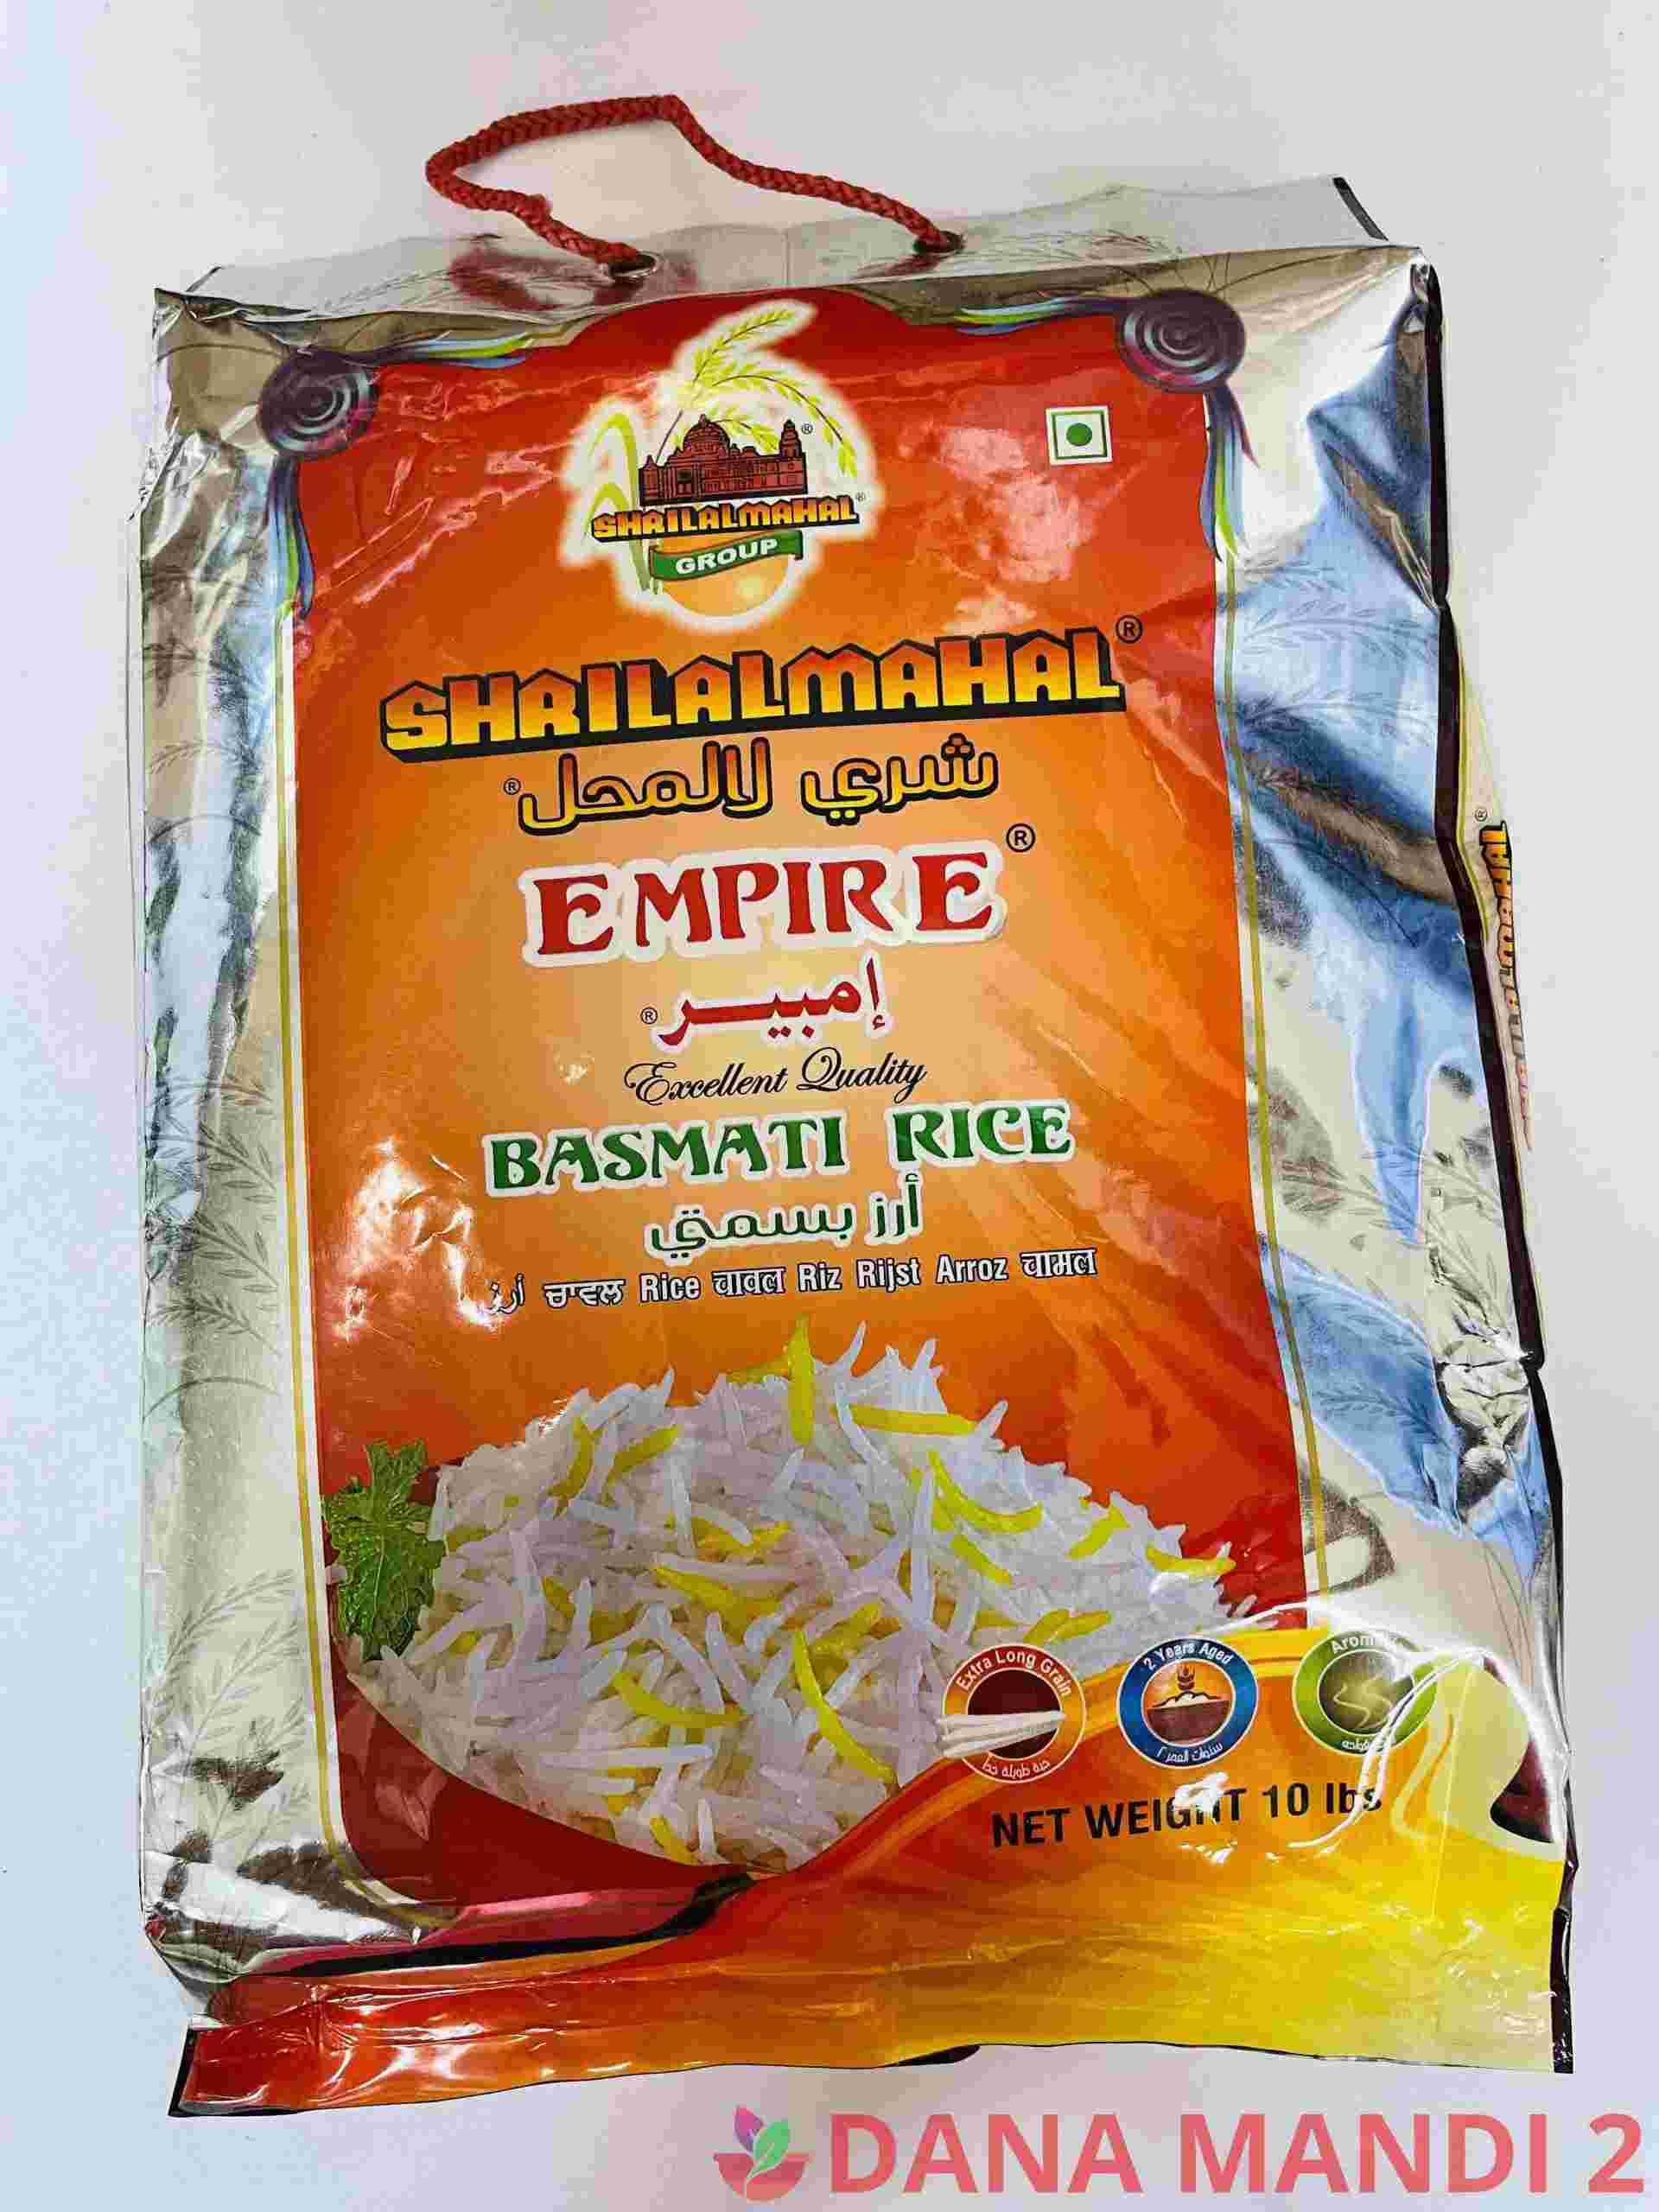 Shailalmahal Empire Basmati Rice